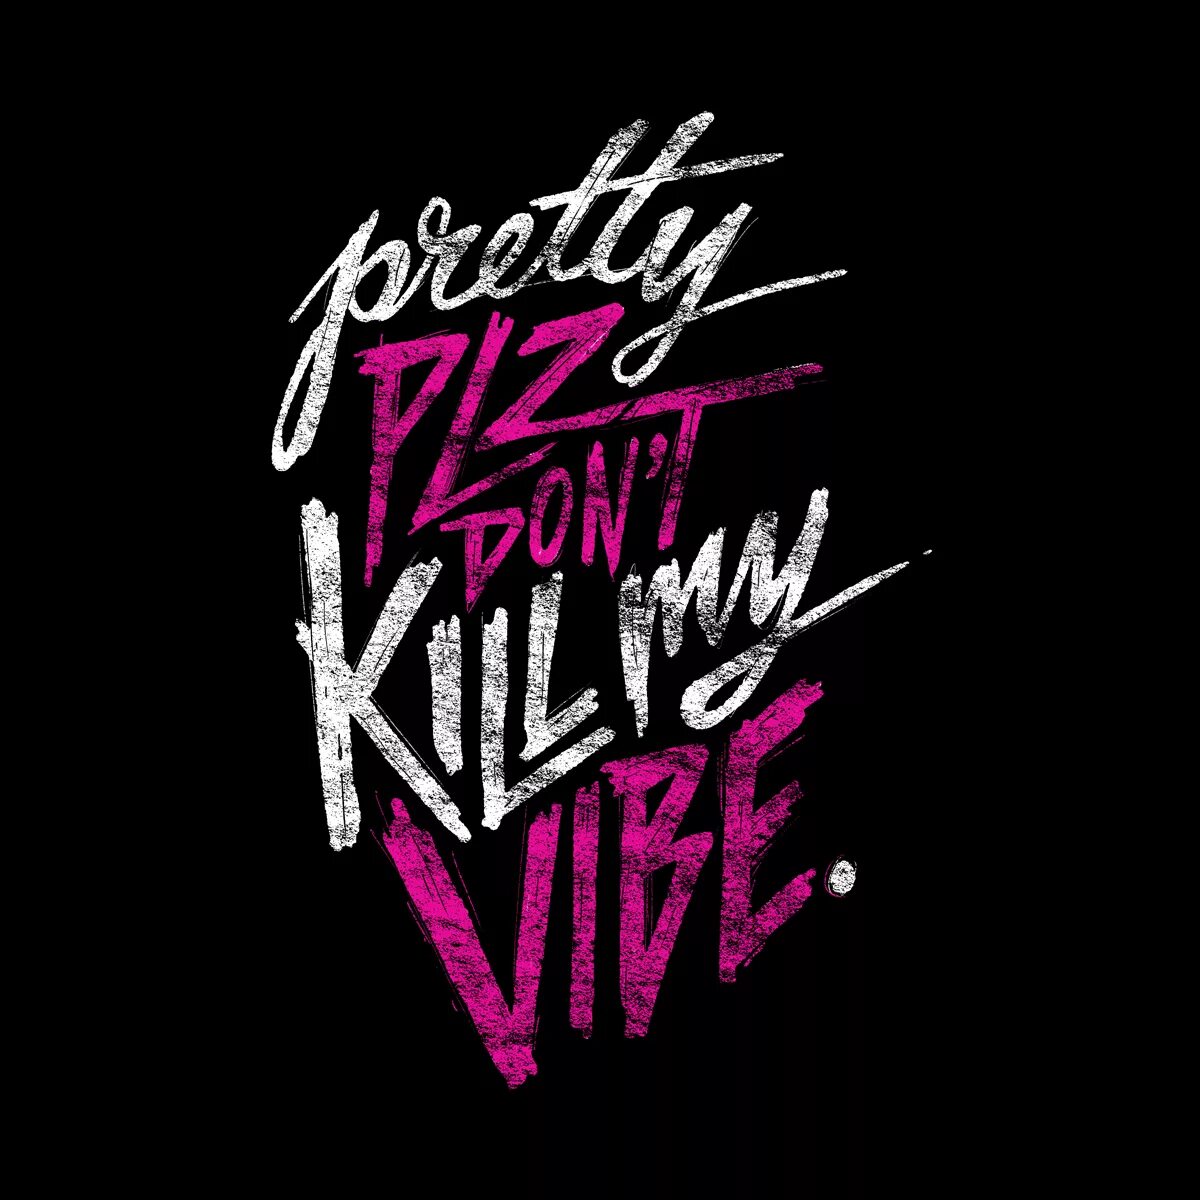 Kill my good. Don't Kill my Vibe. Please don't Kill my Vibe. Обои don't Kill my Vibe. Искусство Вайб.